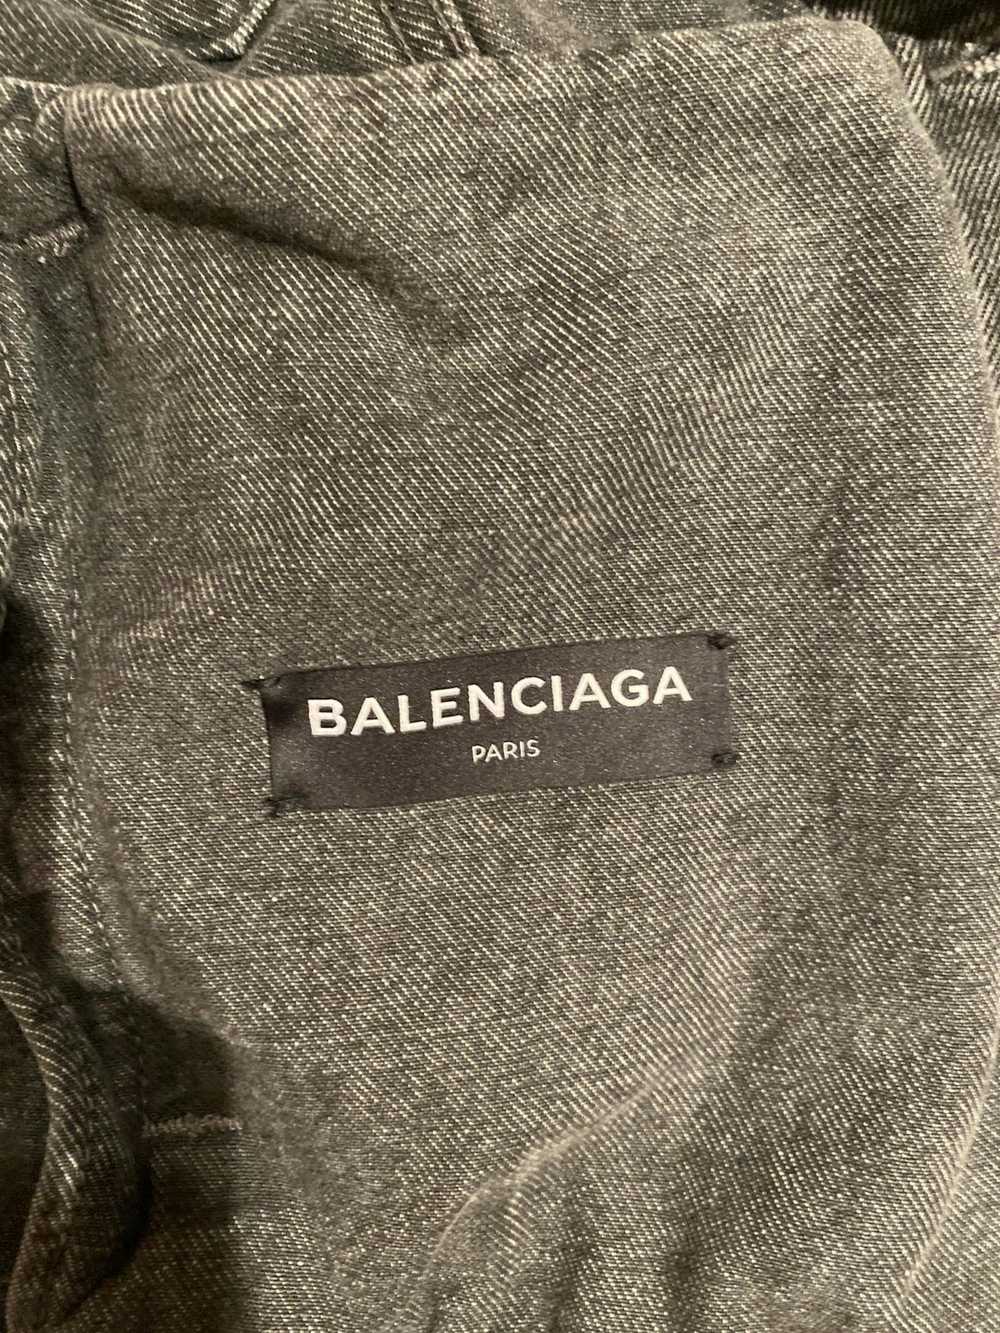 Balenciaga Balenciaga denim jacket - image 3